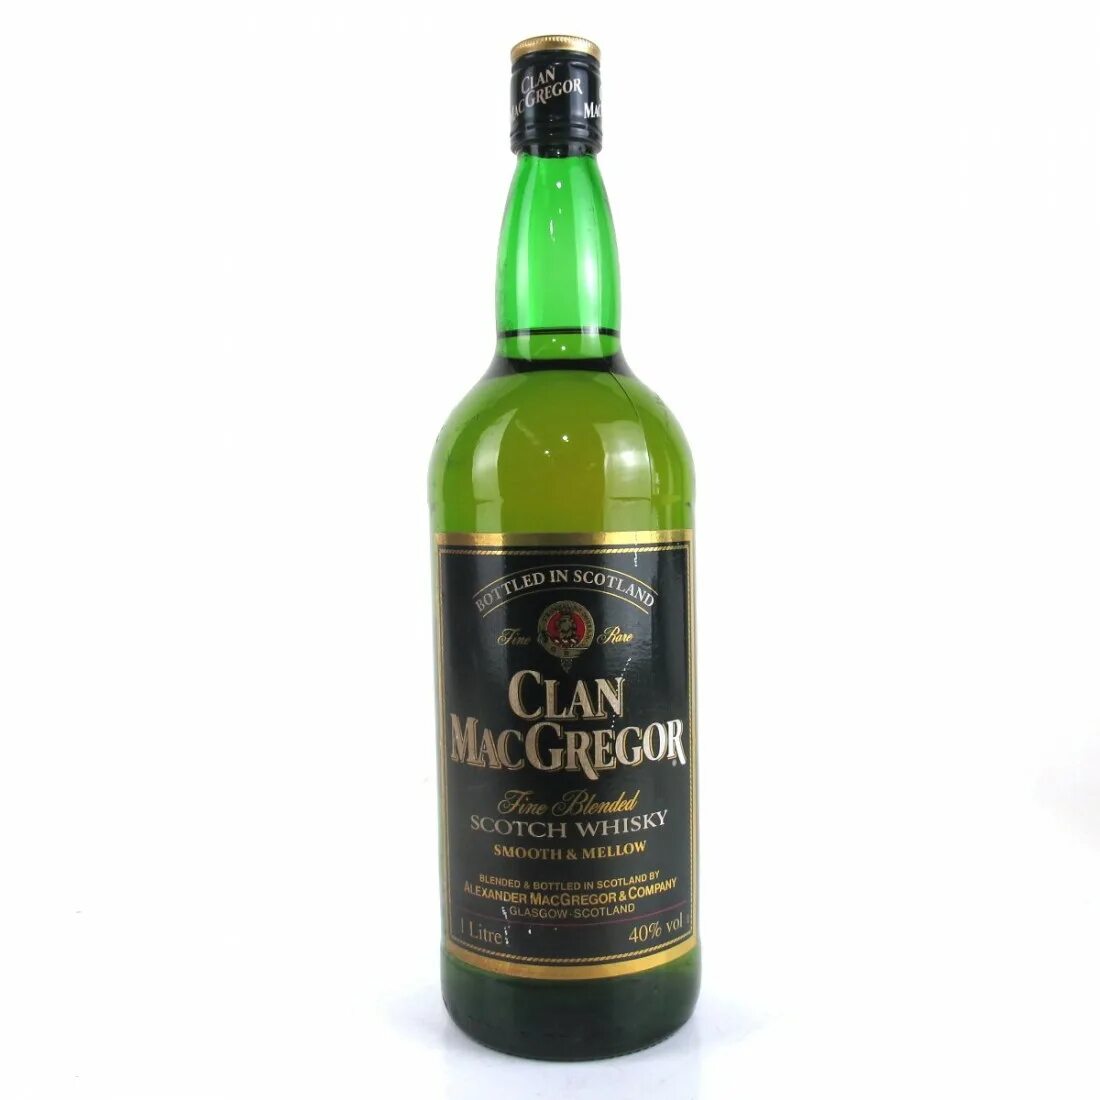 Clan clan цена. Виски клан МАКГРЕГОР купаж 40 0.5л. Виски клан МАКГРЕГОР 0.5. Виски Clan MACGREGOR 0.7. Виски шотландский купажированный клан МАКГРЕГОР.